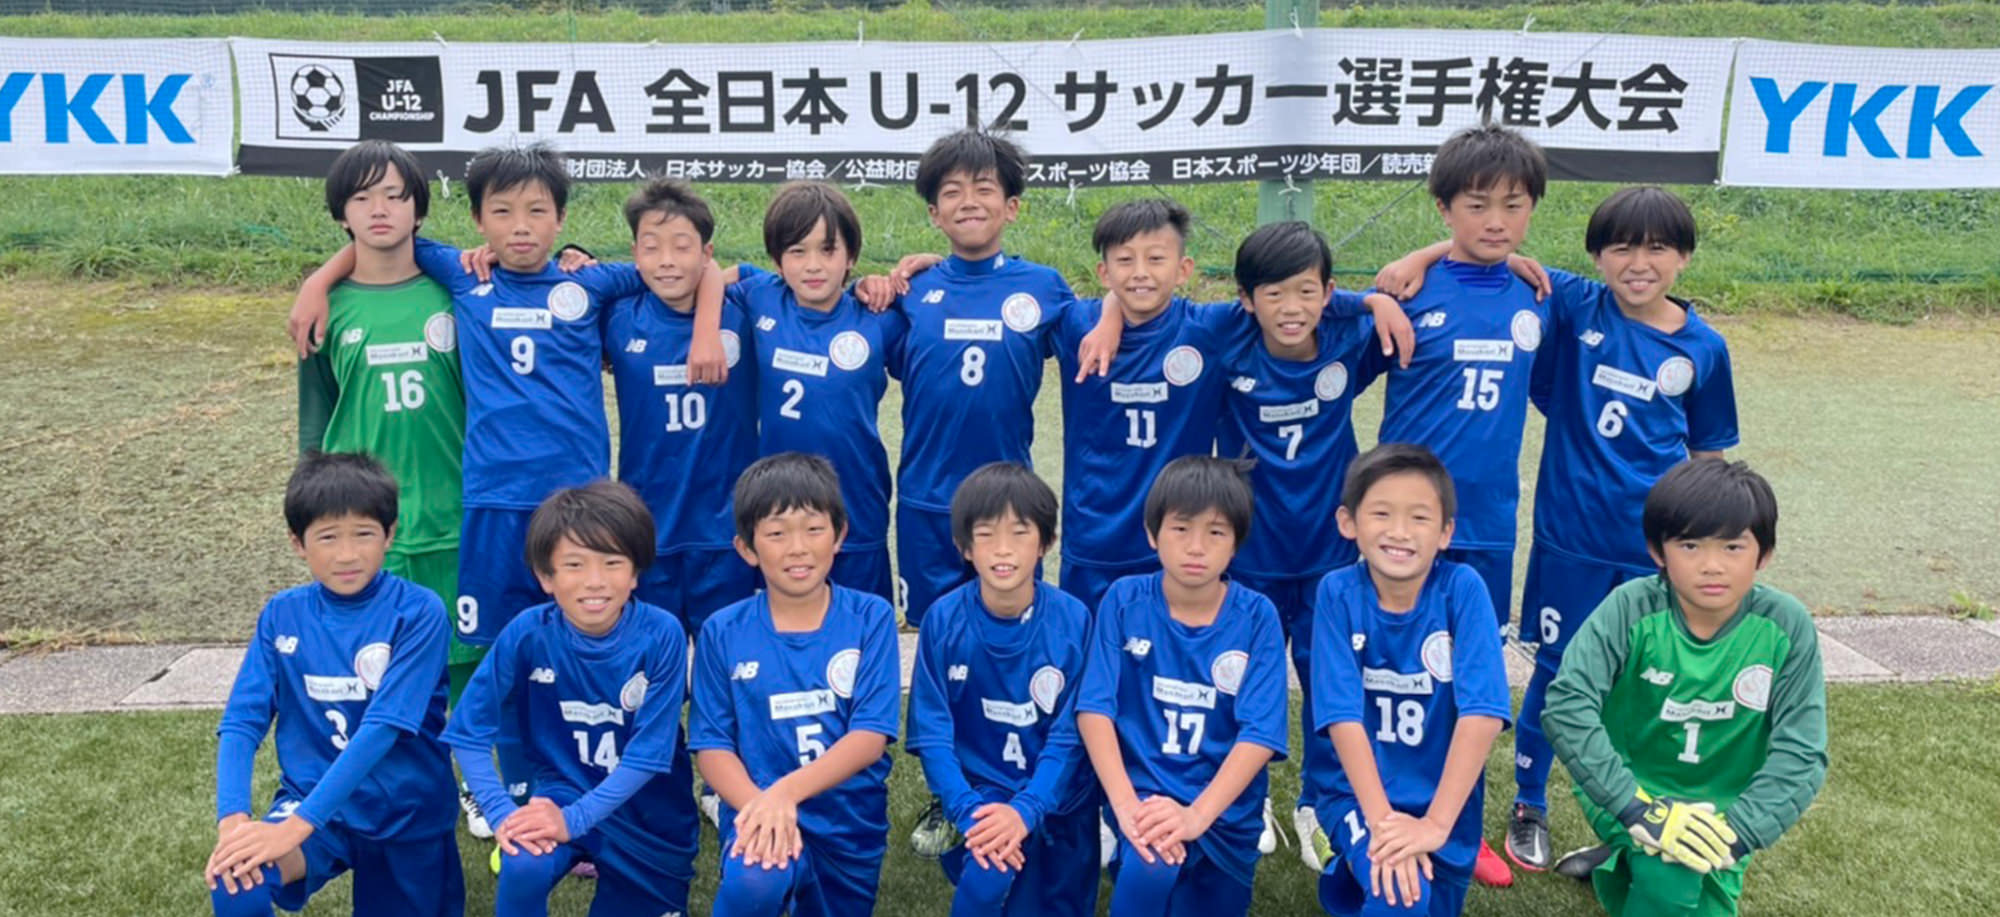 サッカークラブチーム「エスティーロ高山FC」